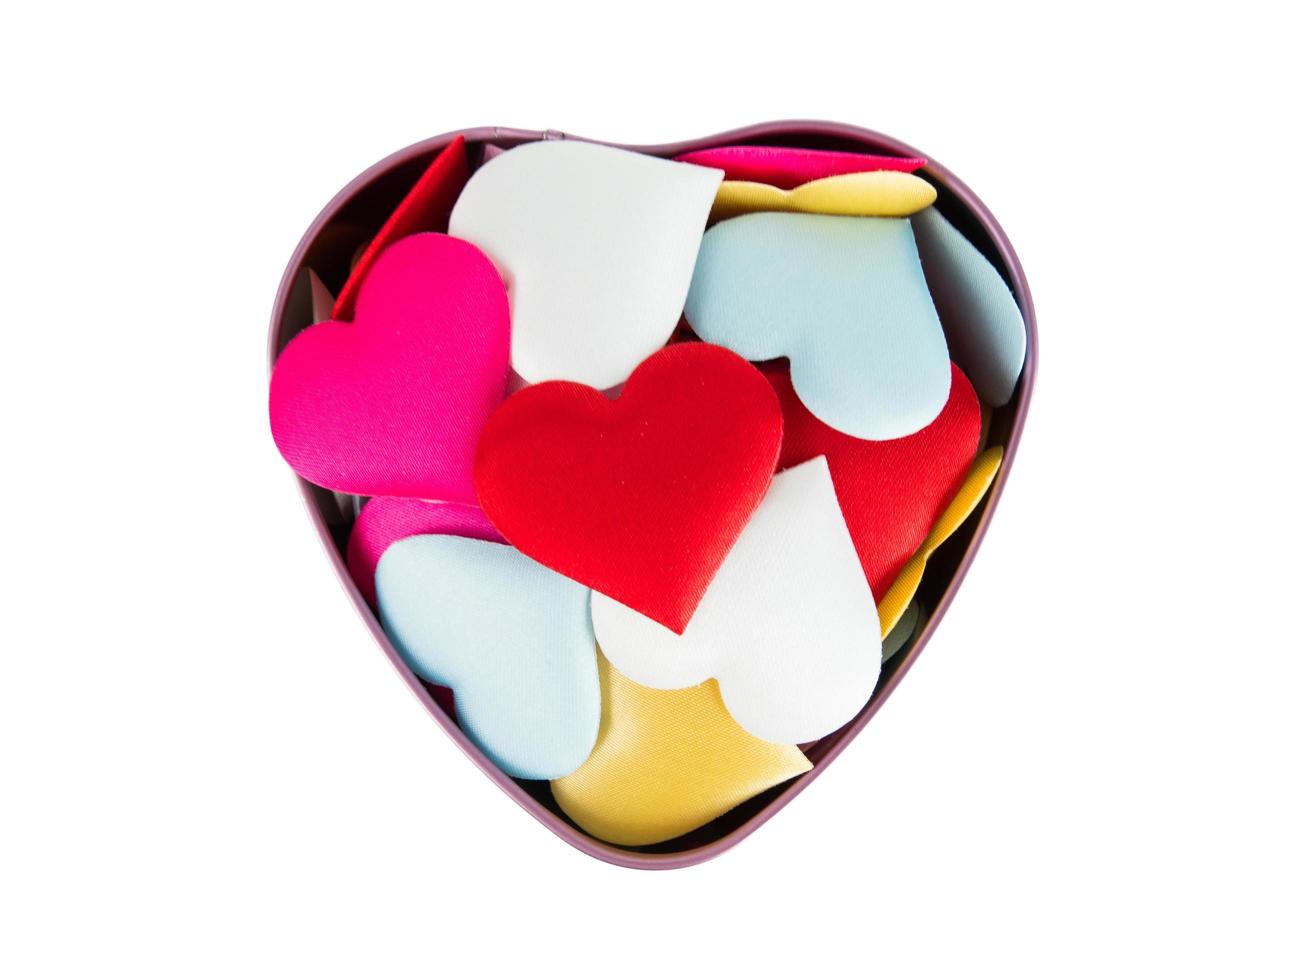 caixa de coração com mini corações coloridos isolados no fundo branco, decorações do dia dos namorados, vários corações, traçado de recorte foto